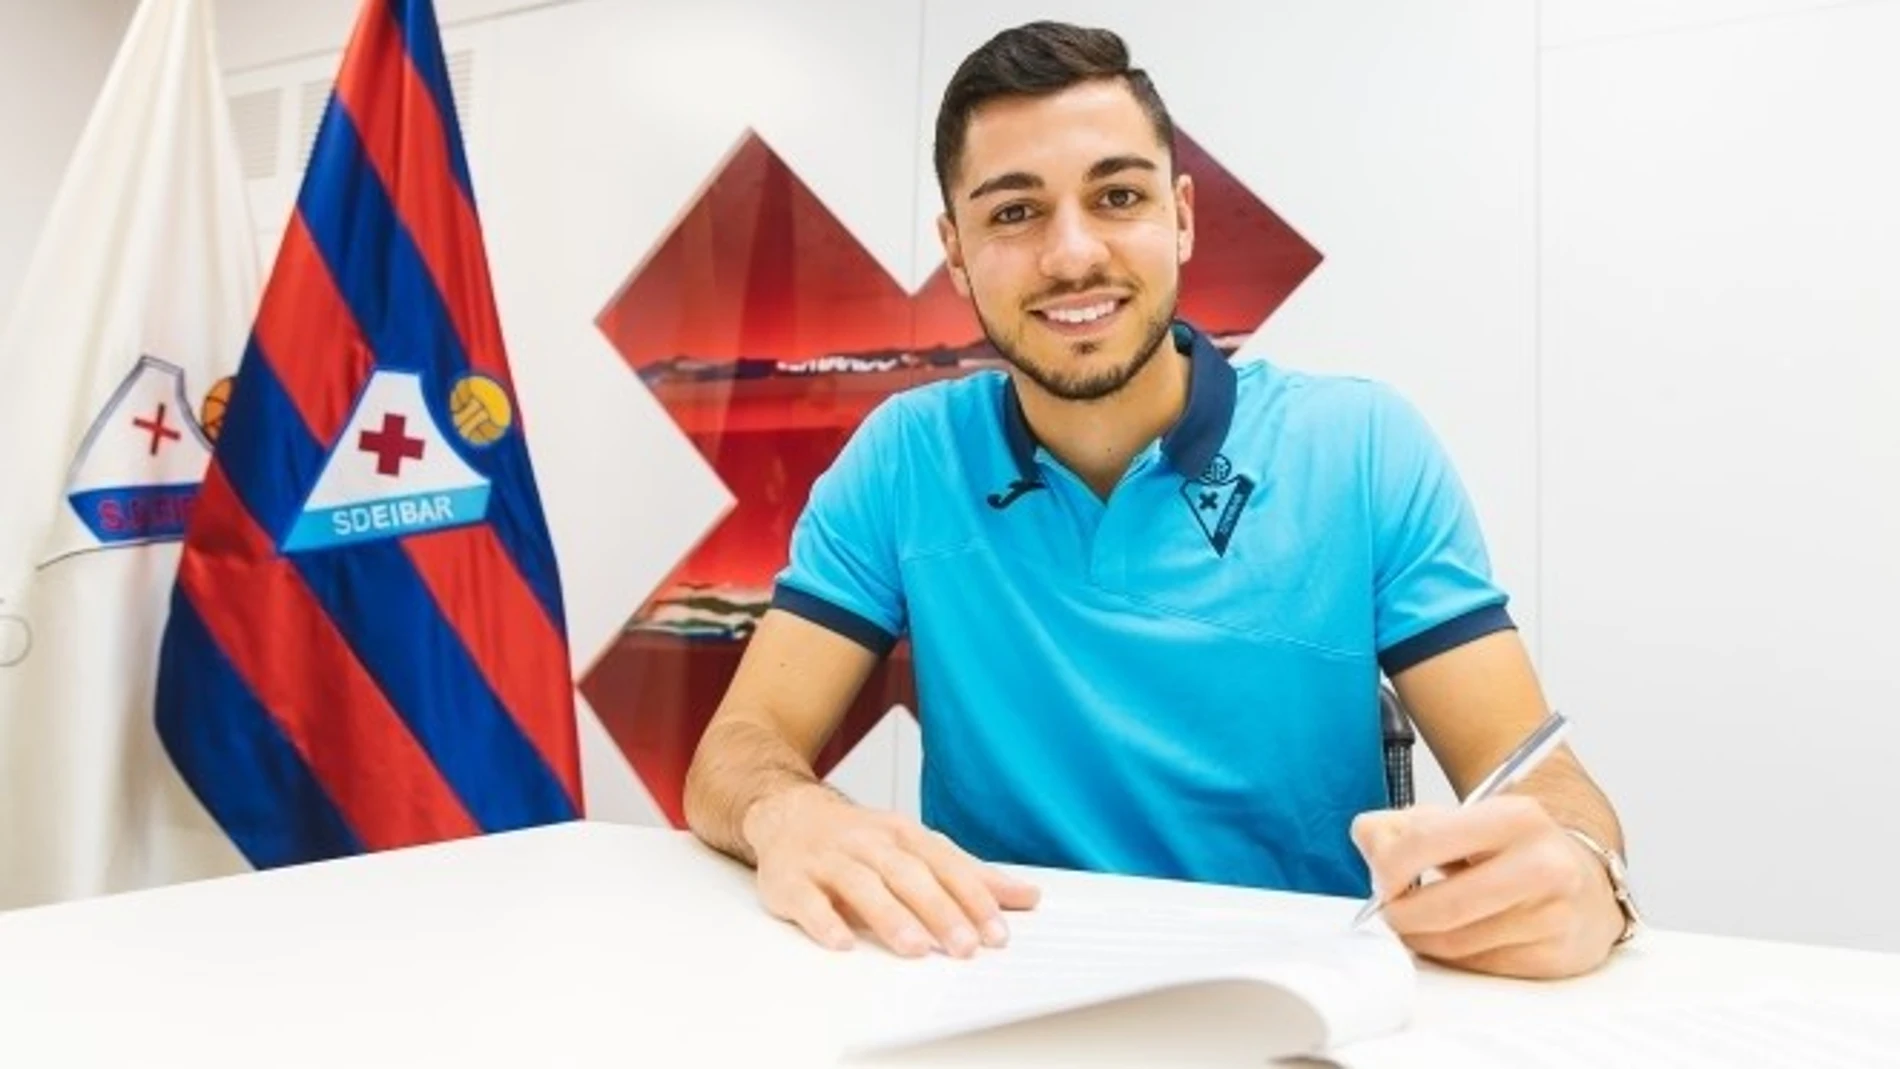 Fútbol.- El lateral portugués Rafa Soares llega al Eibar cedido hasta 2021